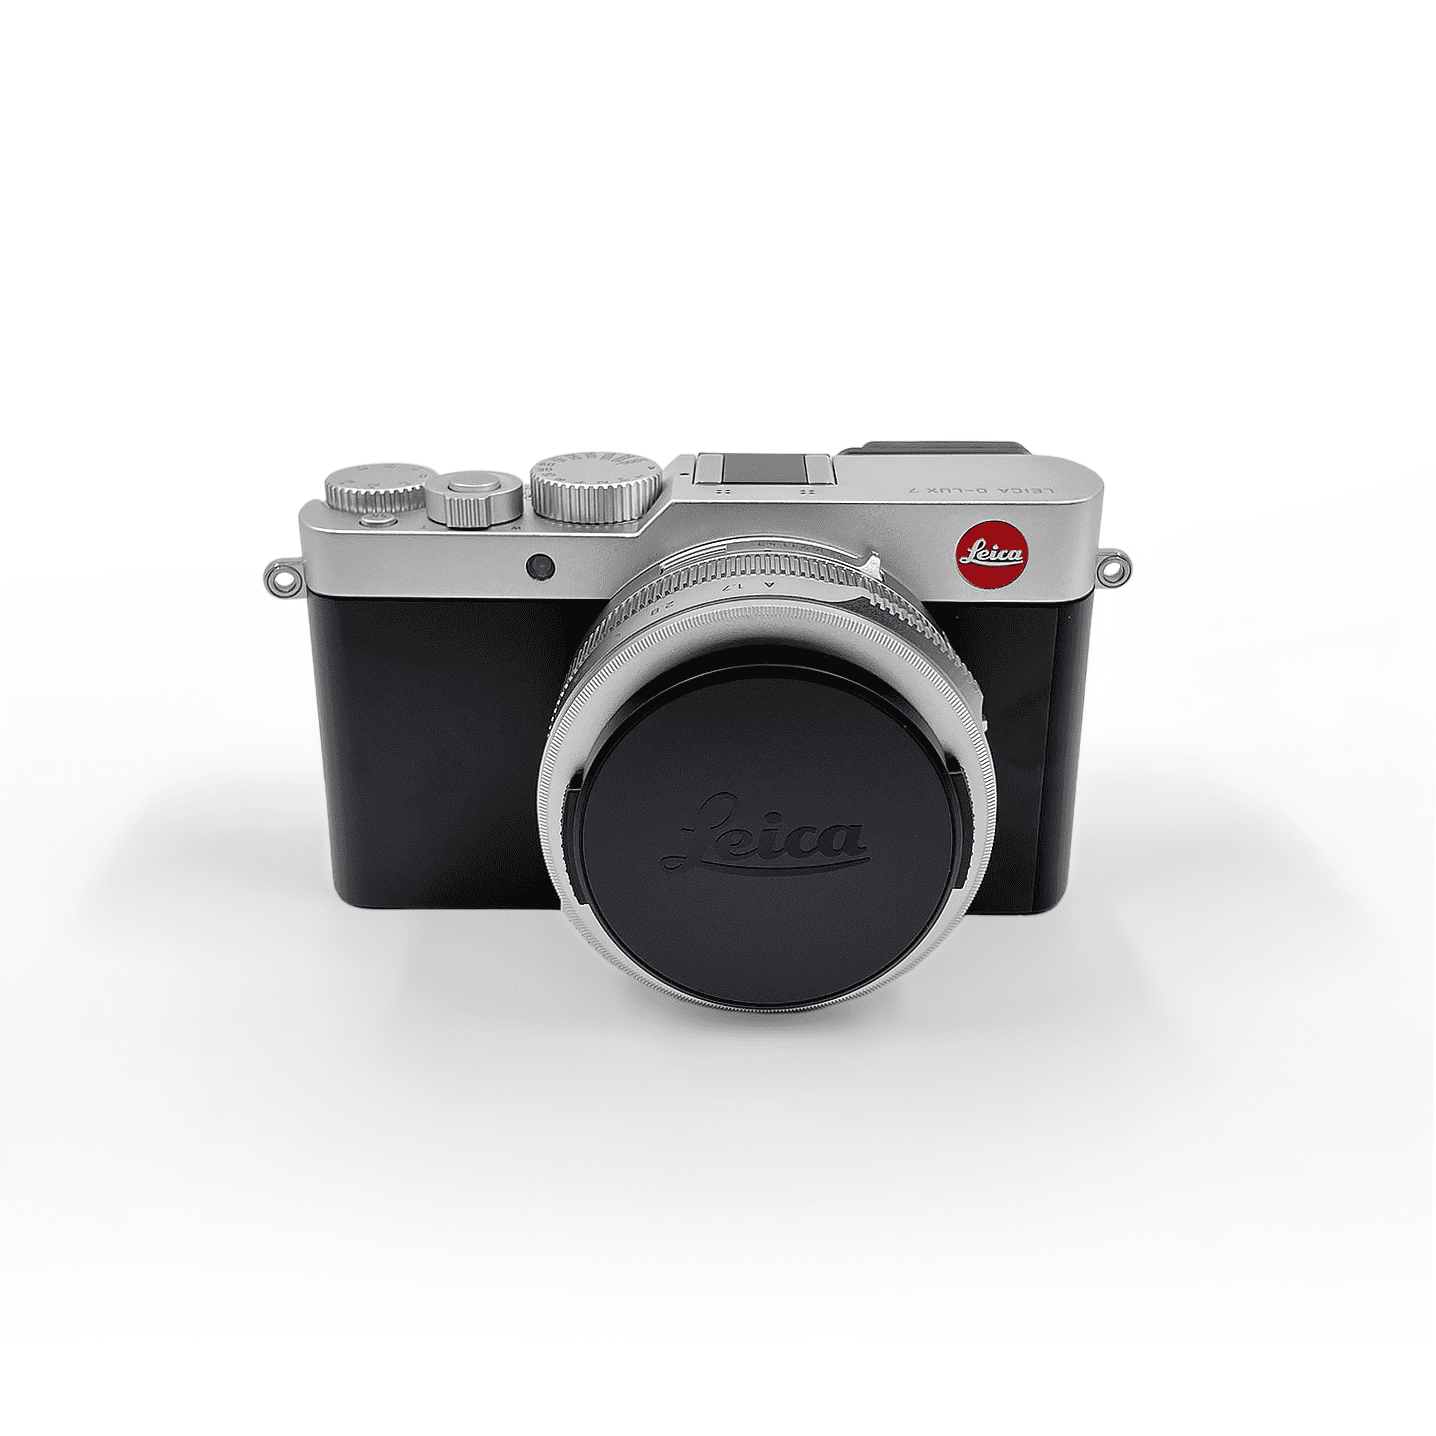 Leica D-LUX 7 Photo